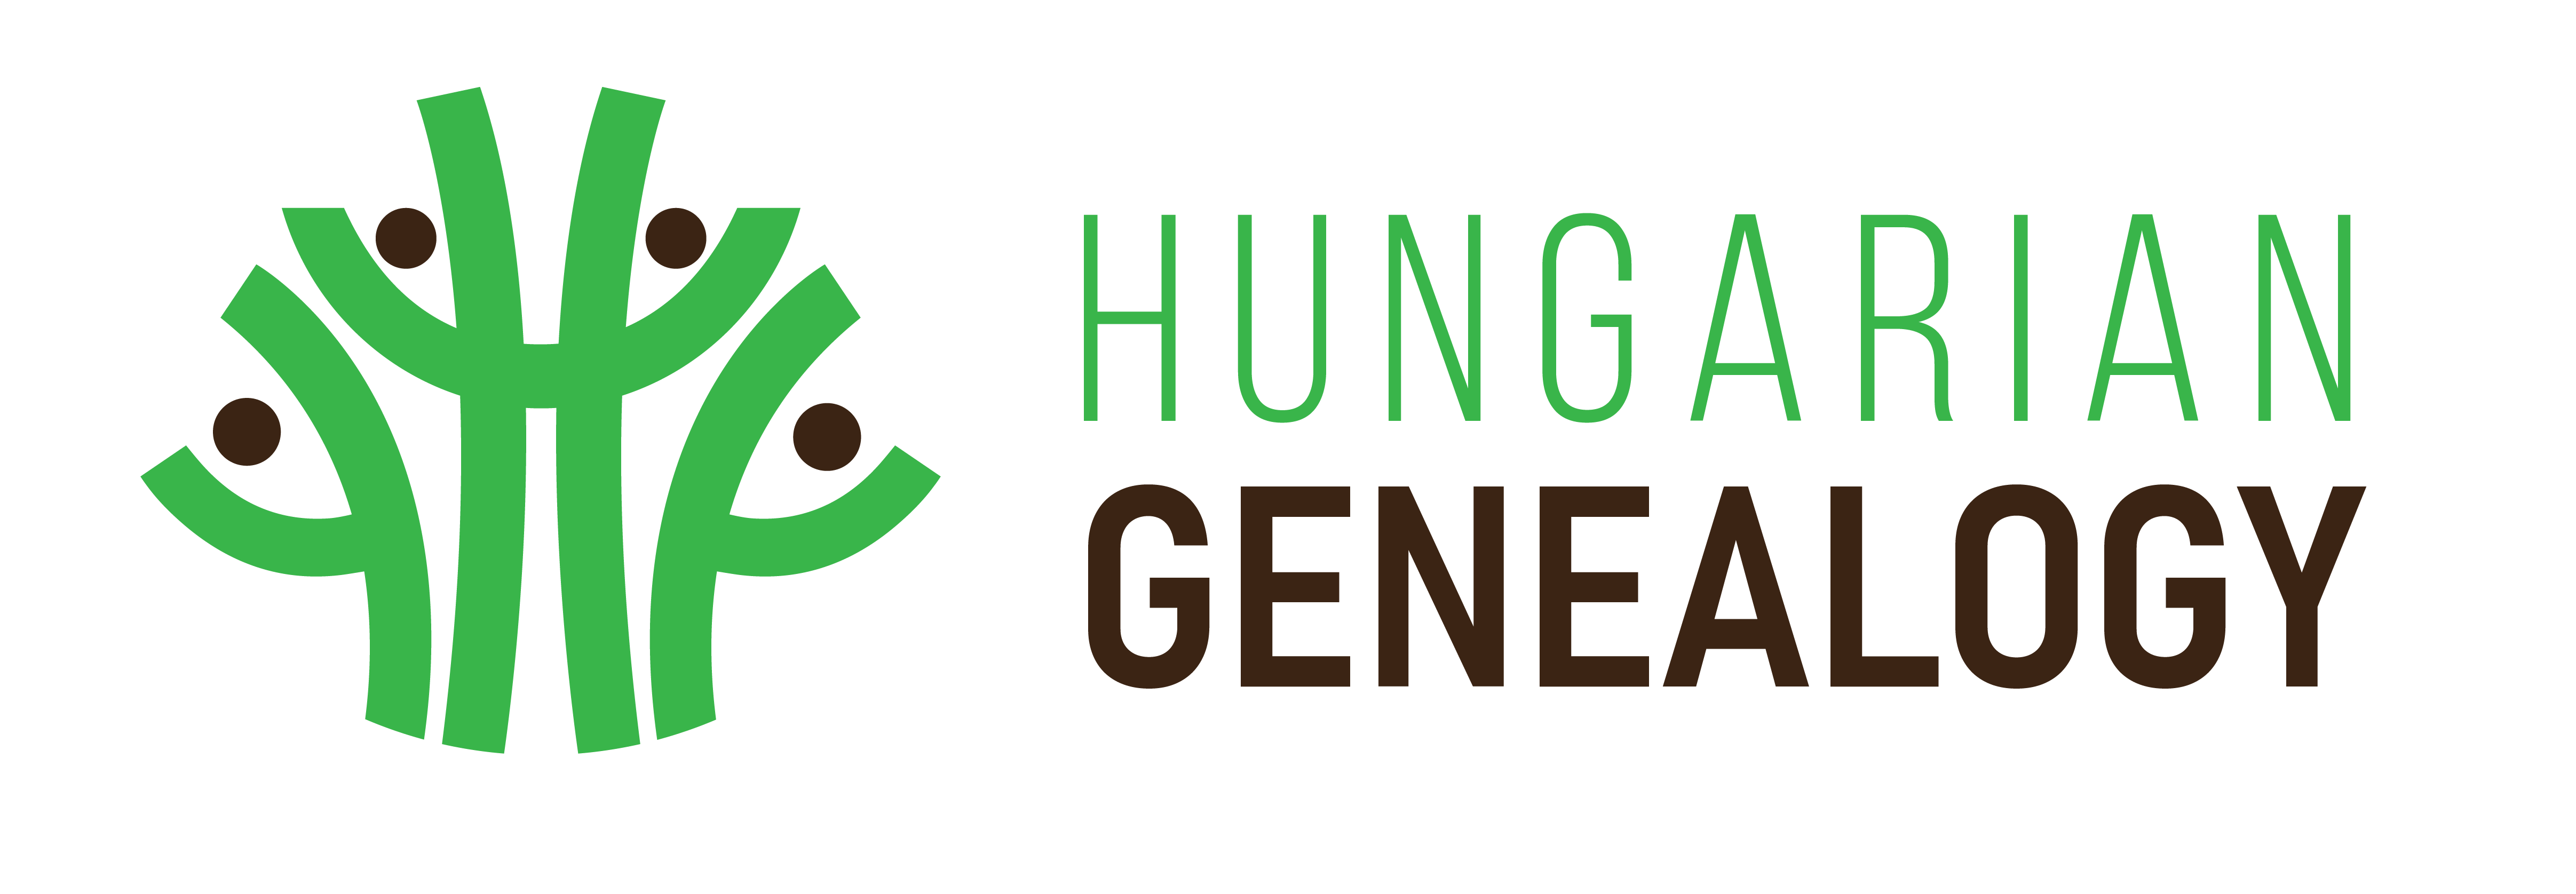 Hungarian Genealogy